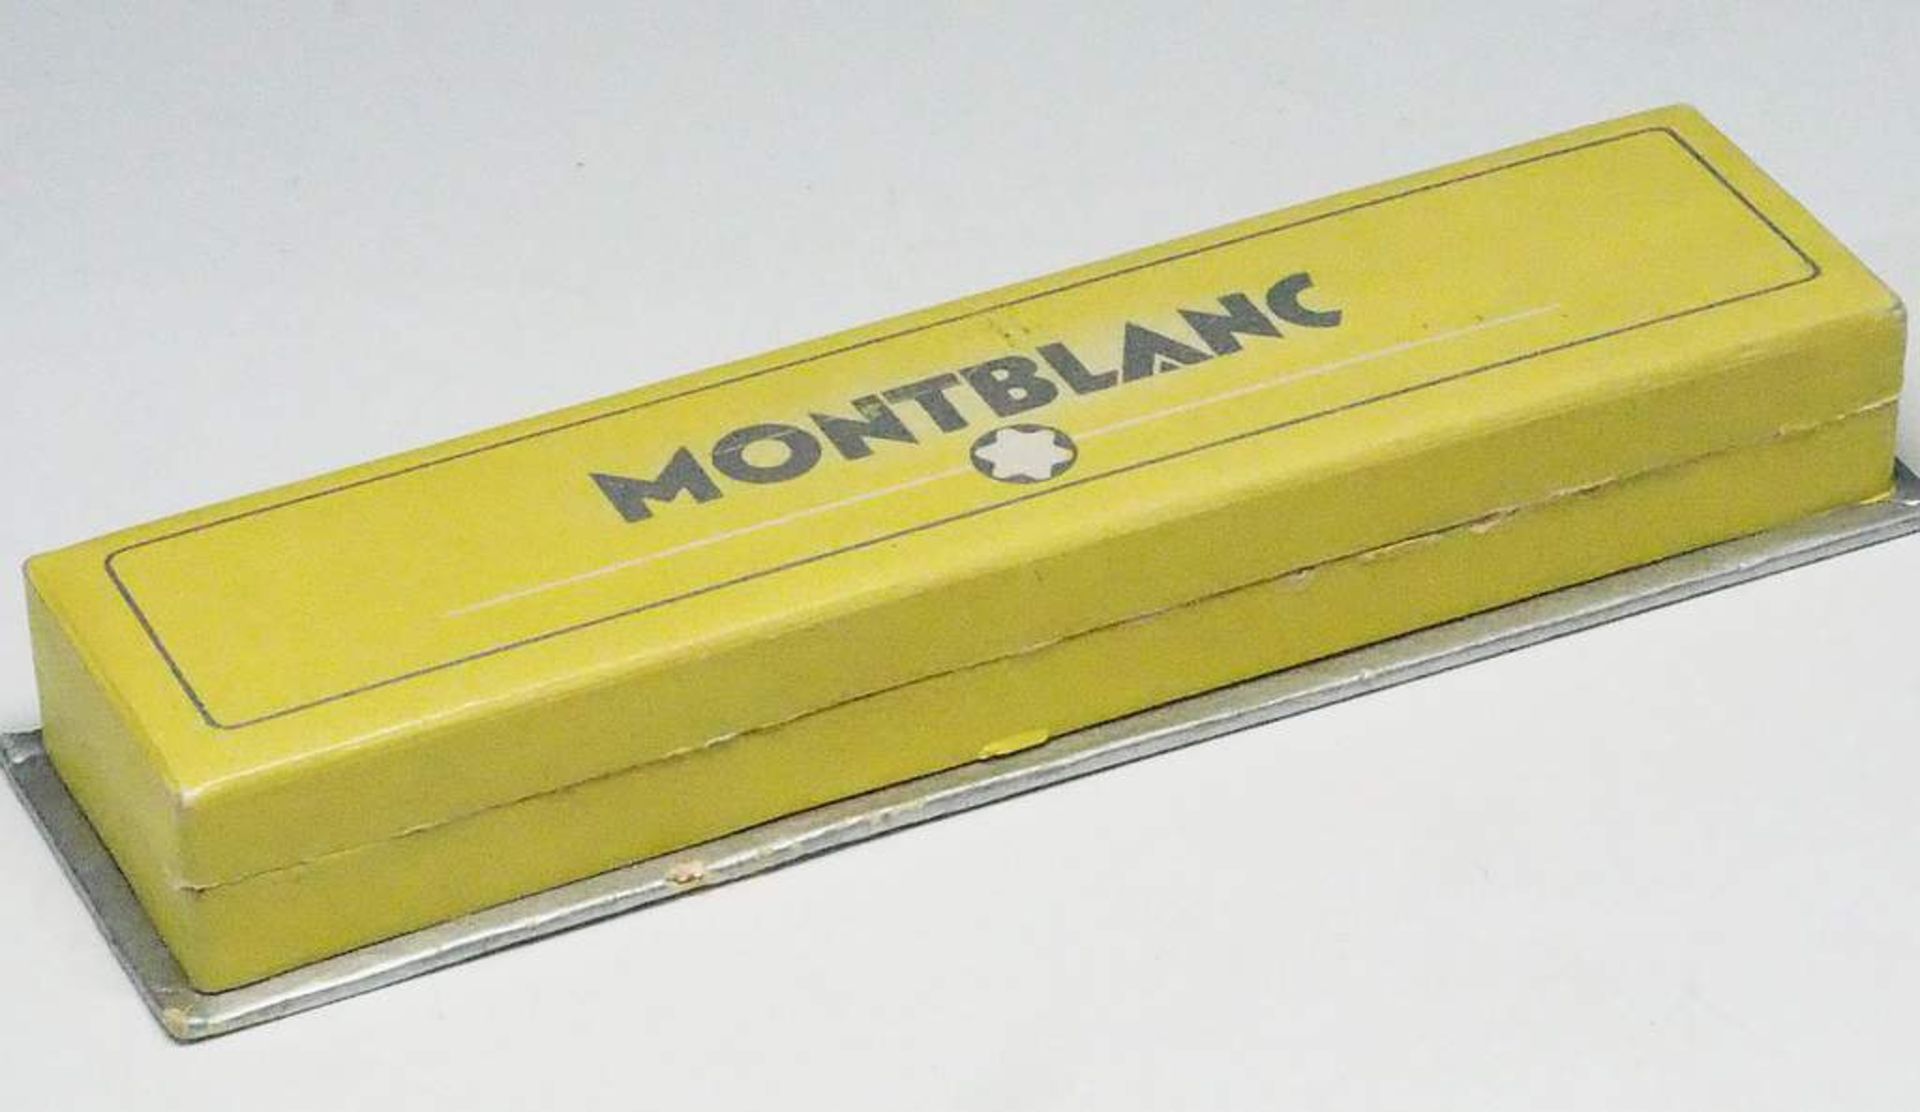 MONTBLANC Schulfüller, Modell 442 mit 14 Karat Goldfeder. - Bild 6 aus 10